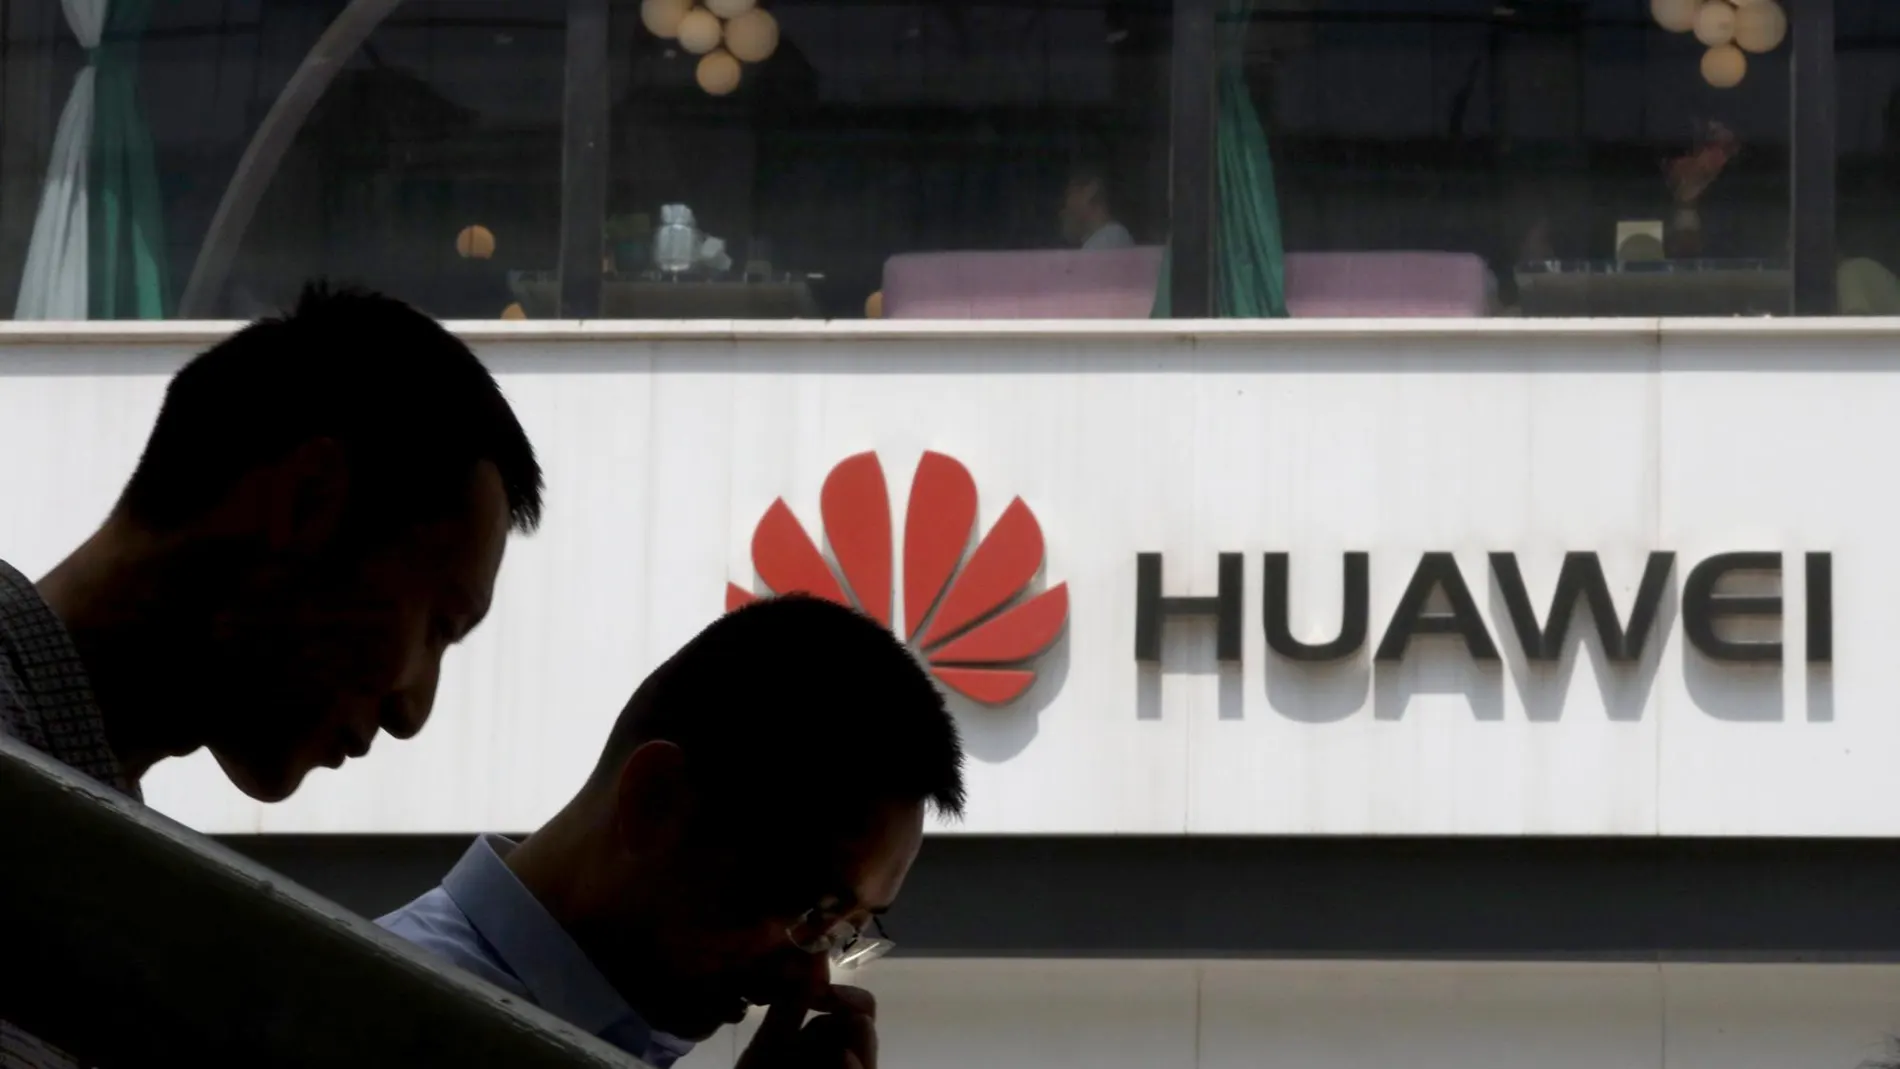 Dos jóvenes chinos con un logotipo de Huawei de fondo